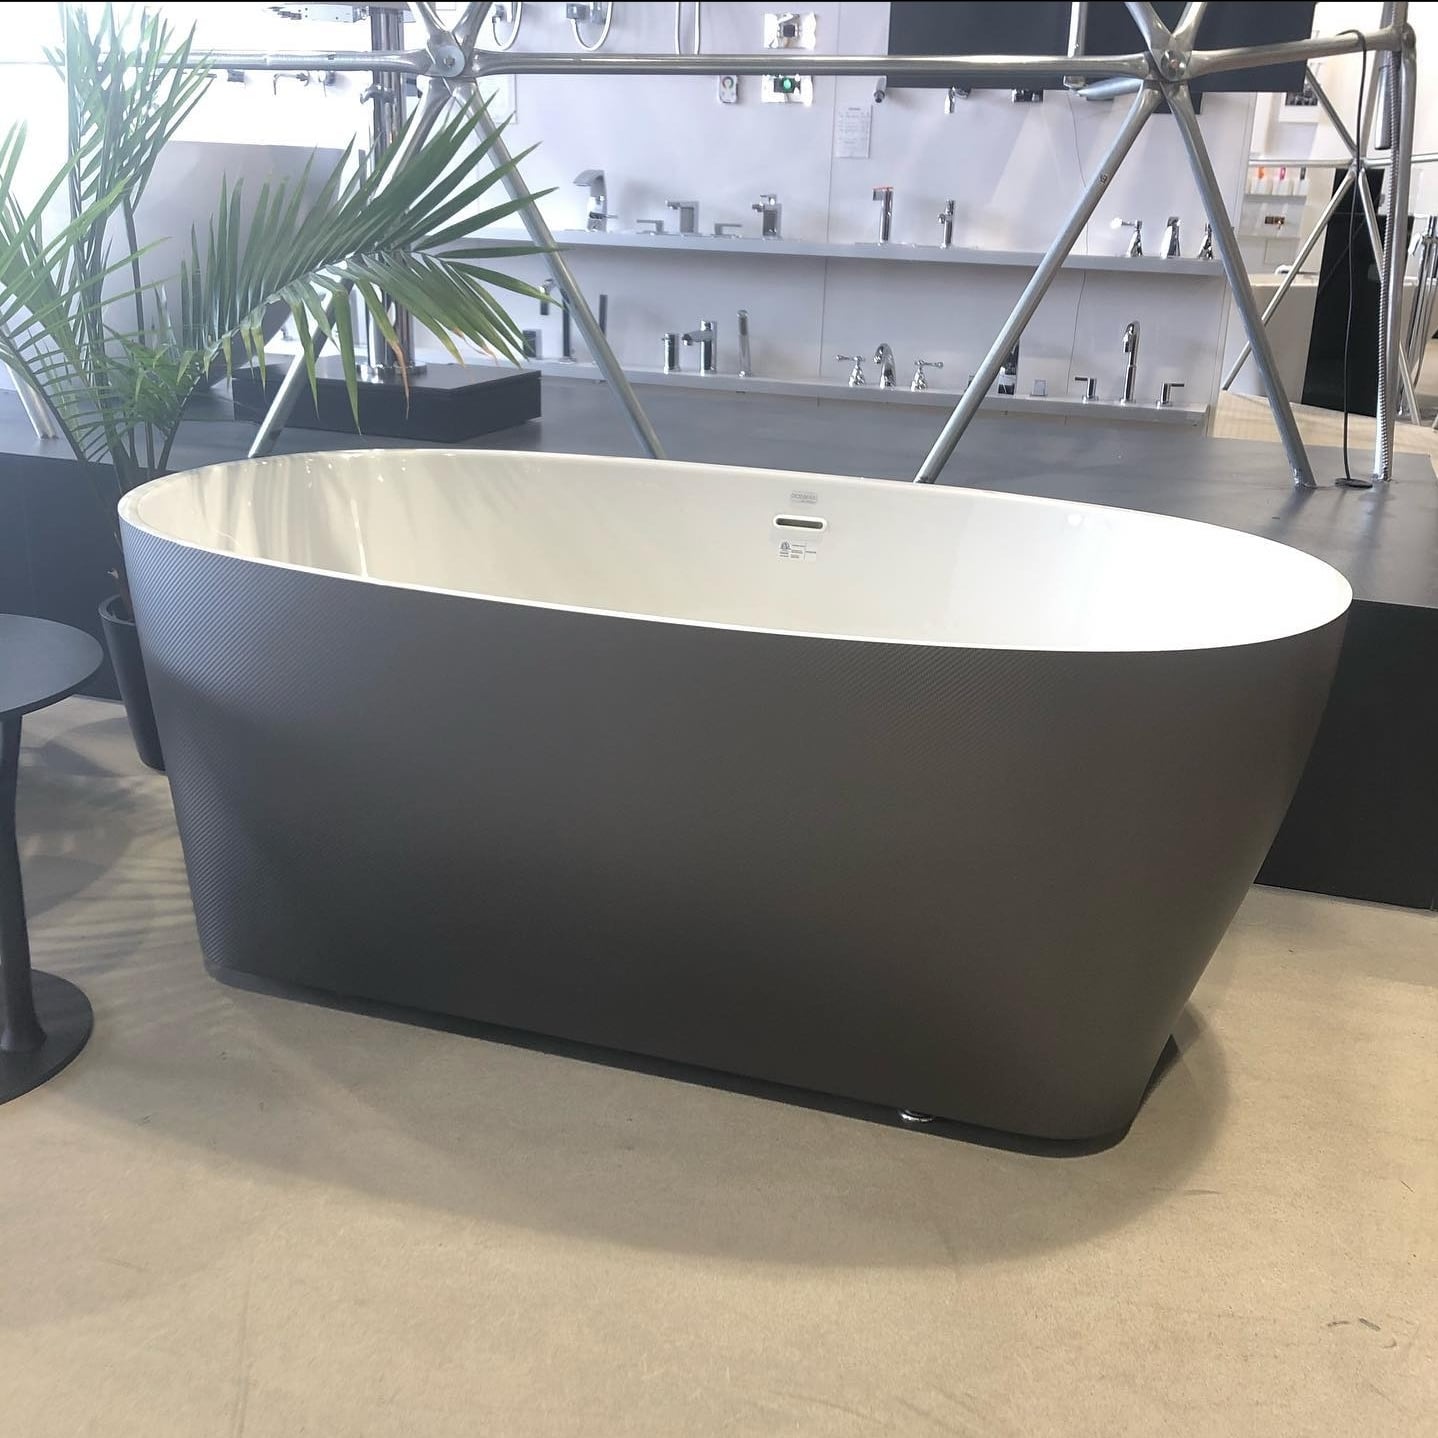 Oceania attitude grey bath tub